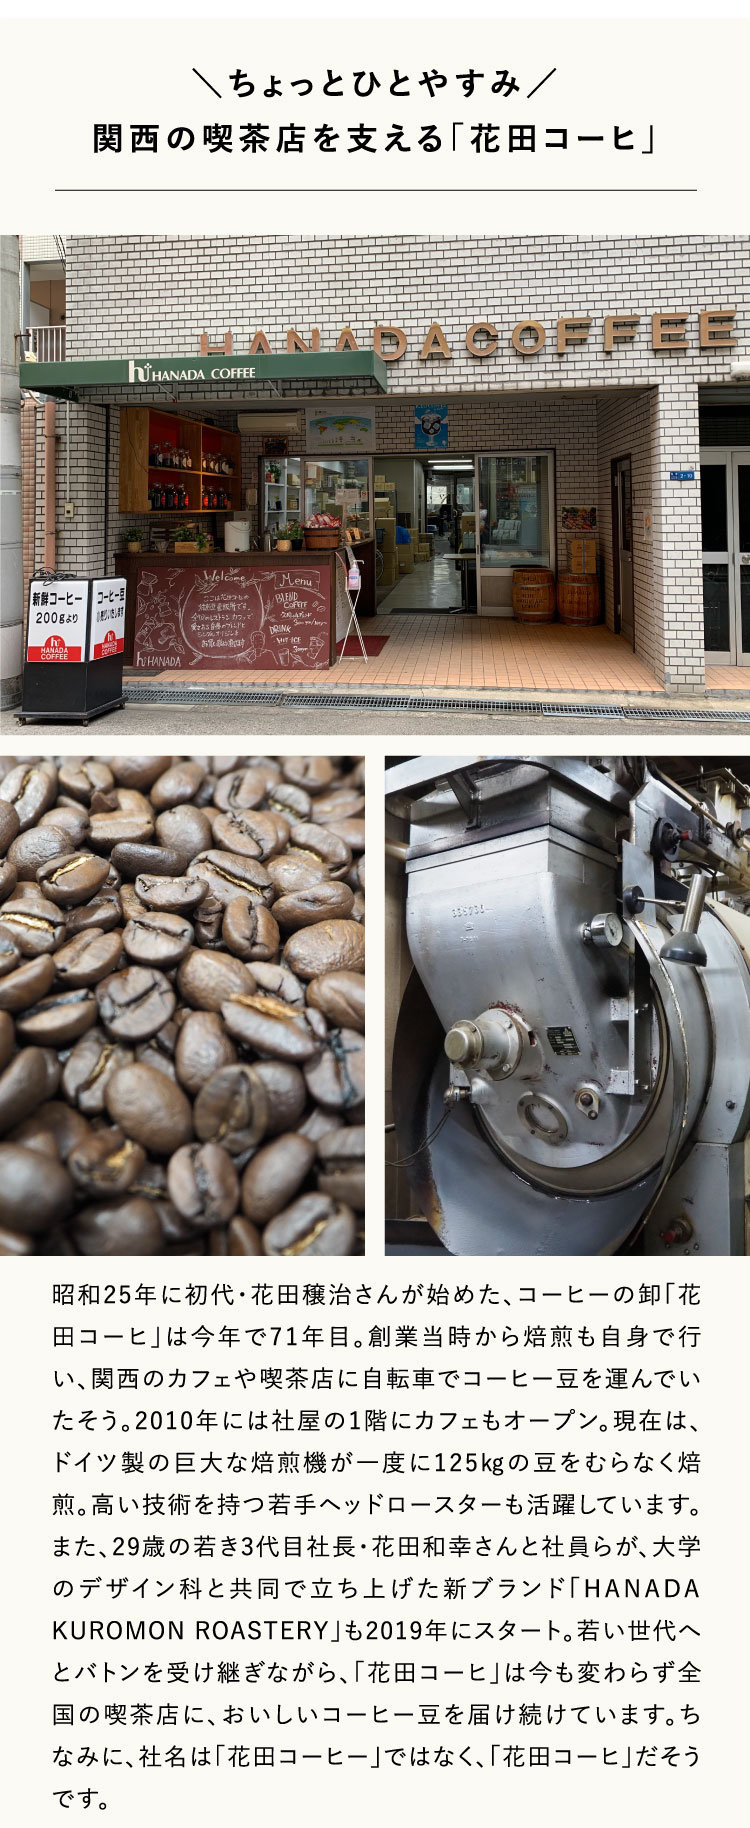 ちょっとひとやすみ／
関西の喫茶店を支える「花田コーヒ」昭和25年に初代・花田穣治さんが始めた、コーヒーの卸「花田コーヒ」は今年で71年目。創業当時から焙煎も自身で行い、関西のカフェや喫茶店に自転車でコーヒー豆を運んでいたそう。2010年には社屋の1階にカフェもオープン。現在は、ドイツ製の巨大な焙煎機が一度に125㎏の豆をむらなく焙煎。高い技術を持つ若手ヘッドロースターも活躍しています。また、29歳の若き3代目社長・花田和幸さんと社員らが、大学のデザイン科と共同で立ち上げた新ブランド「HANADA KUROMON ROASTERY」も2019年にスタート。若い世代へとバトンを受け継ぎながら、「花田コーヒ」は今も変わらず全国の喫茶店に、おいしいコーヒー豆を届け続けています。ちなみに、社名は「花田コーヒー」ではなく、「花田コーヒ」だそうです。